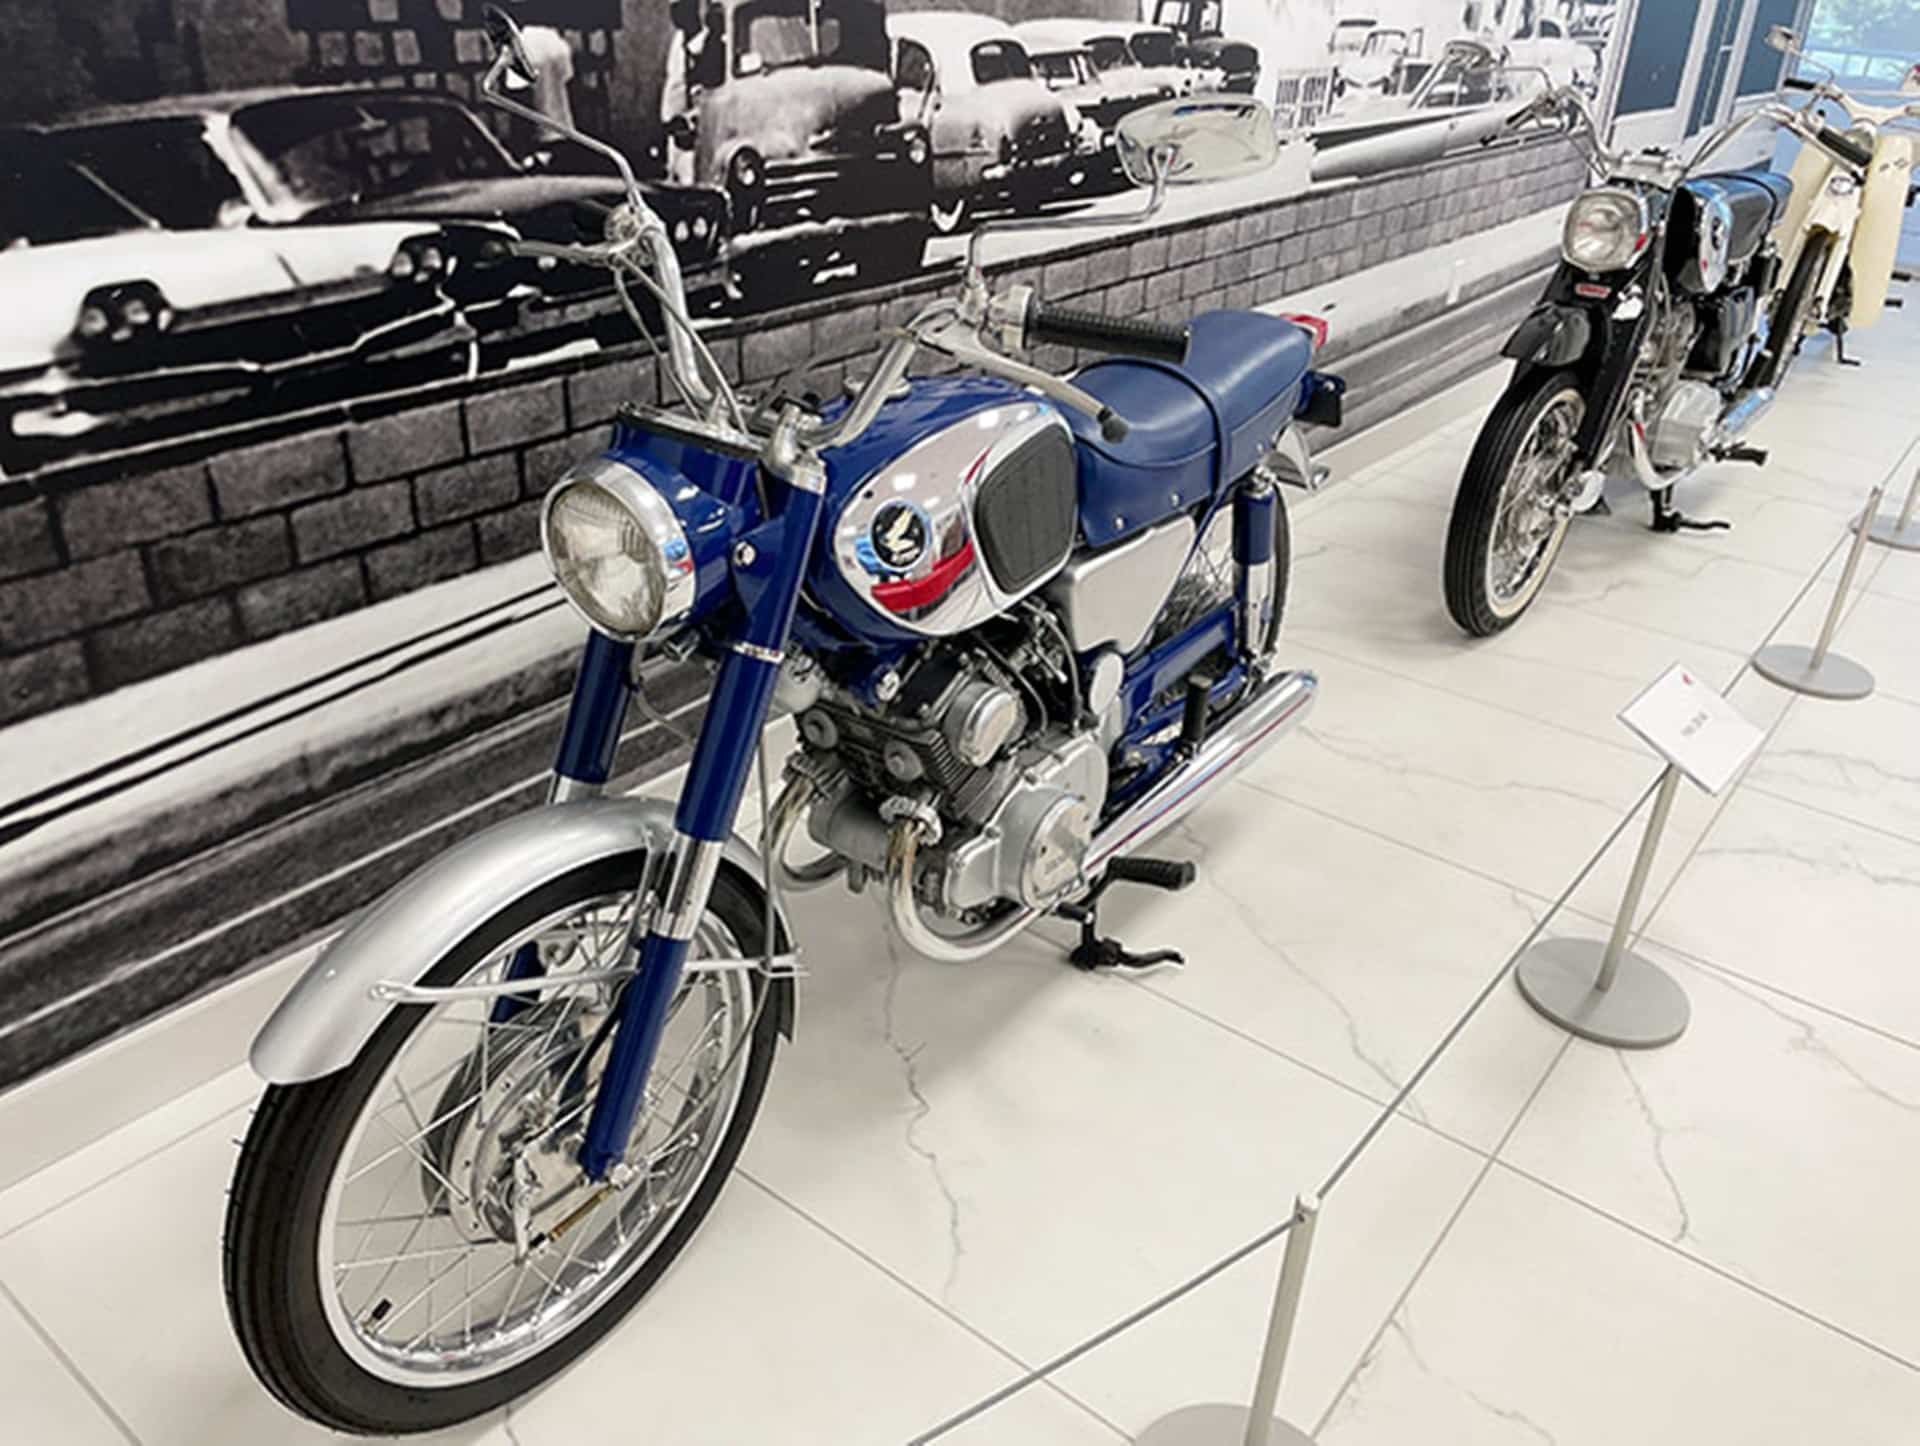 American Honda Collection Hall, el nuevo museo de la marca japonesa inaugurado en California